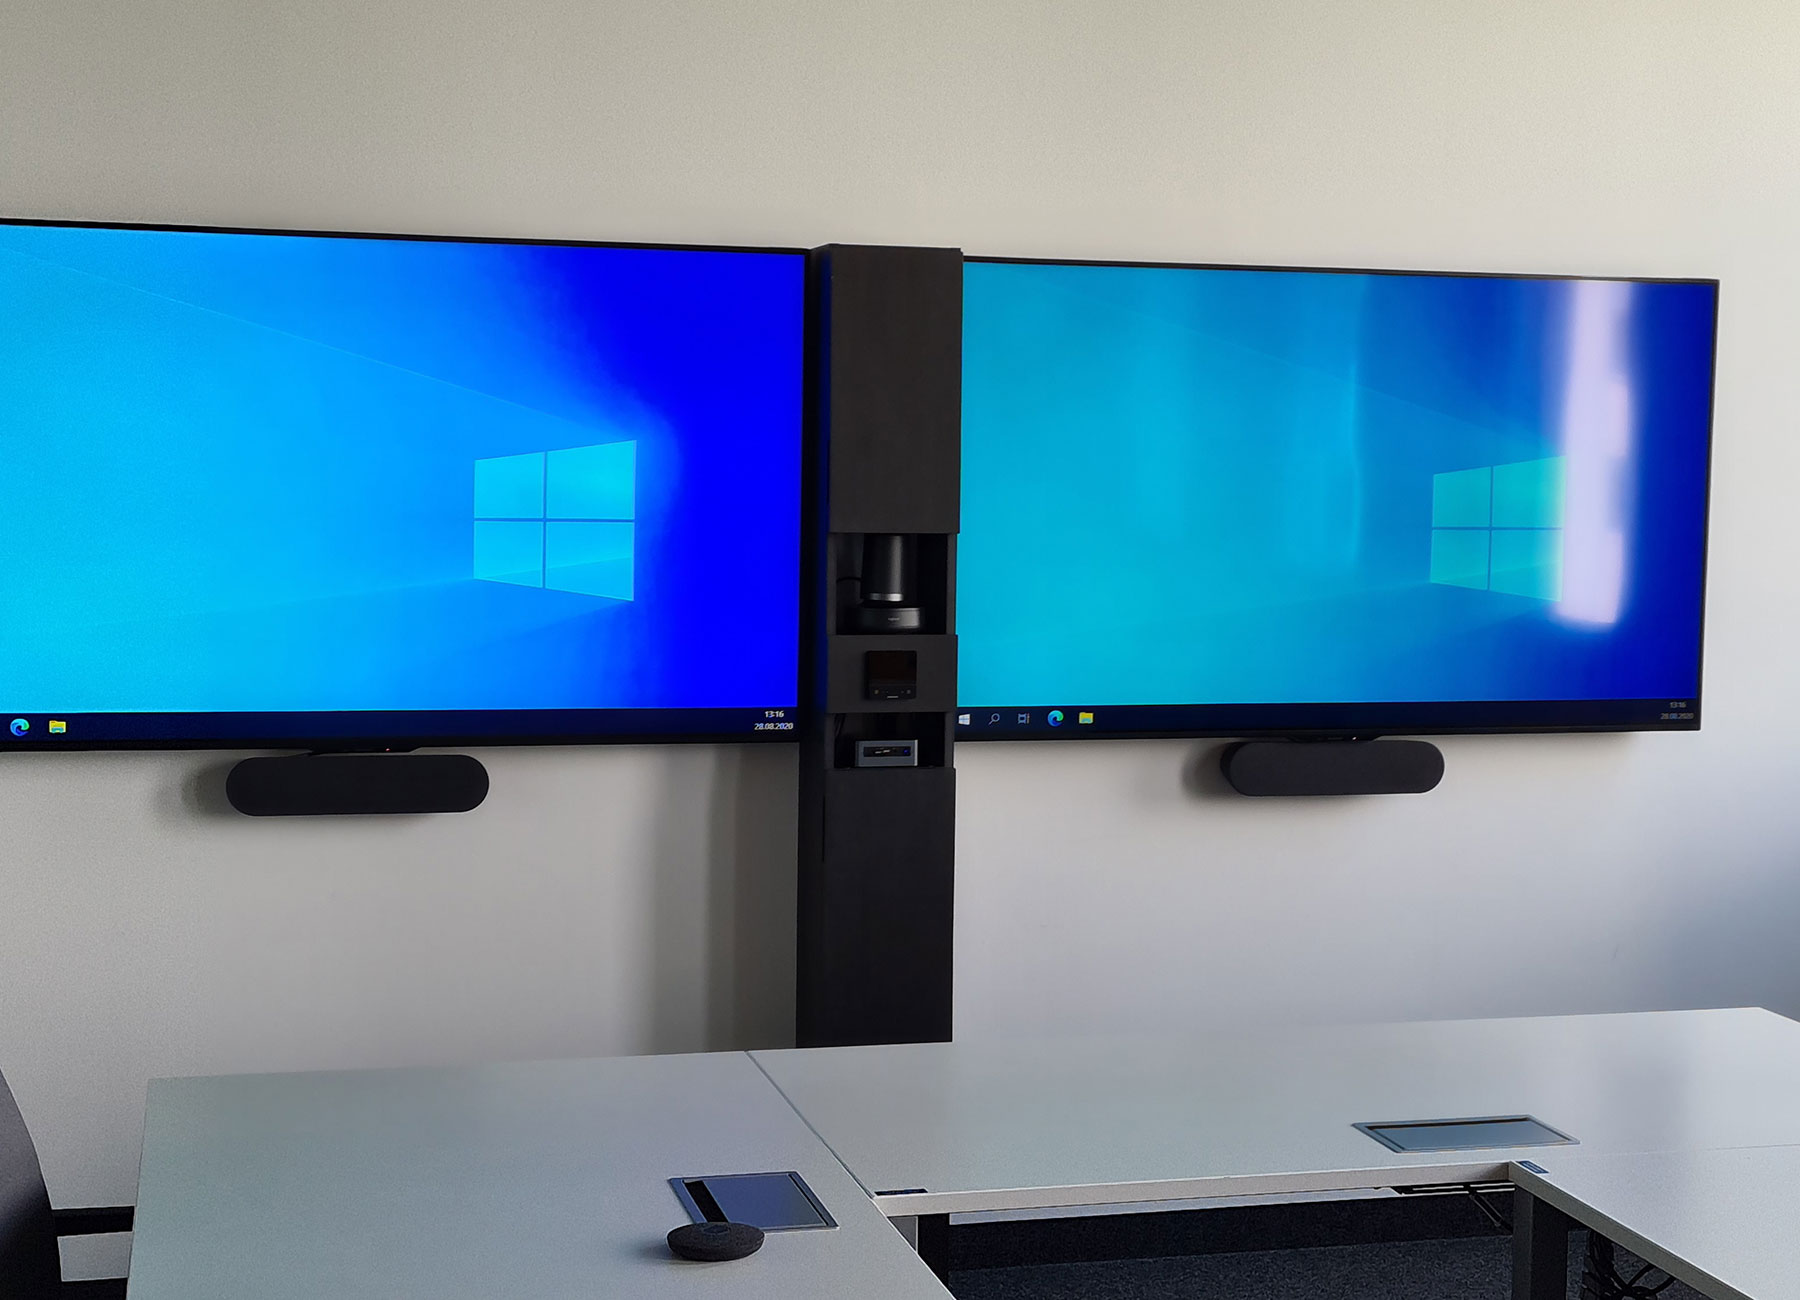 Configuración para videoconferencia con dos monitores Windows idénticos